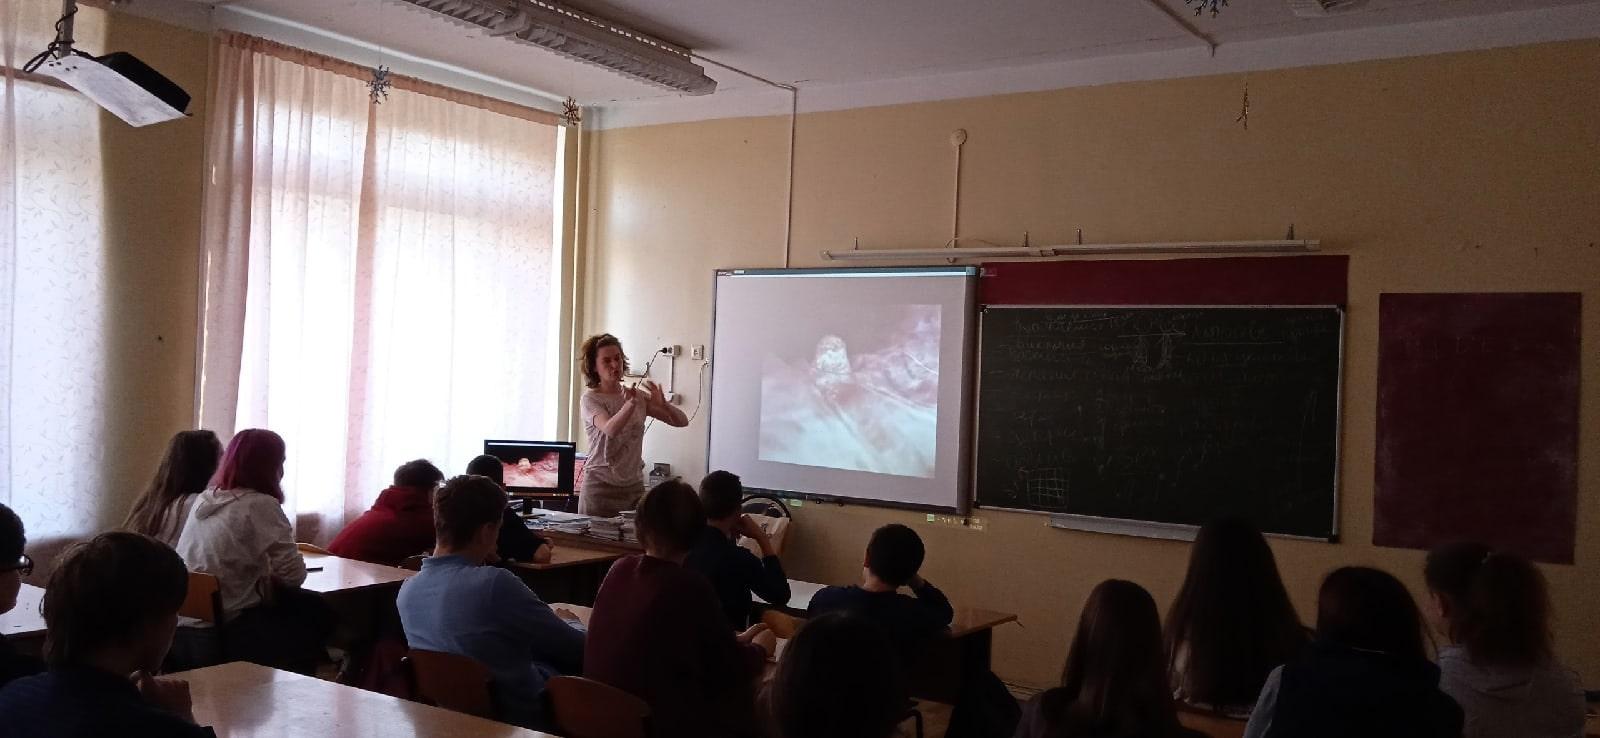 Для учащихся 8-го класса МБОУ СОШ 54 г. Кирова была проведена лекция «Разговор о любви»